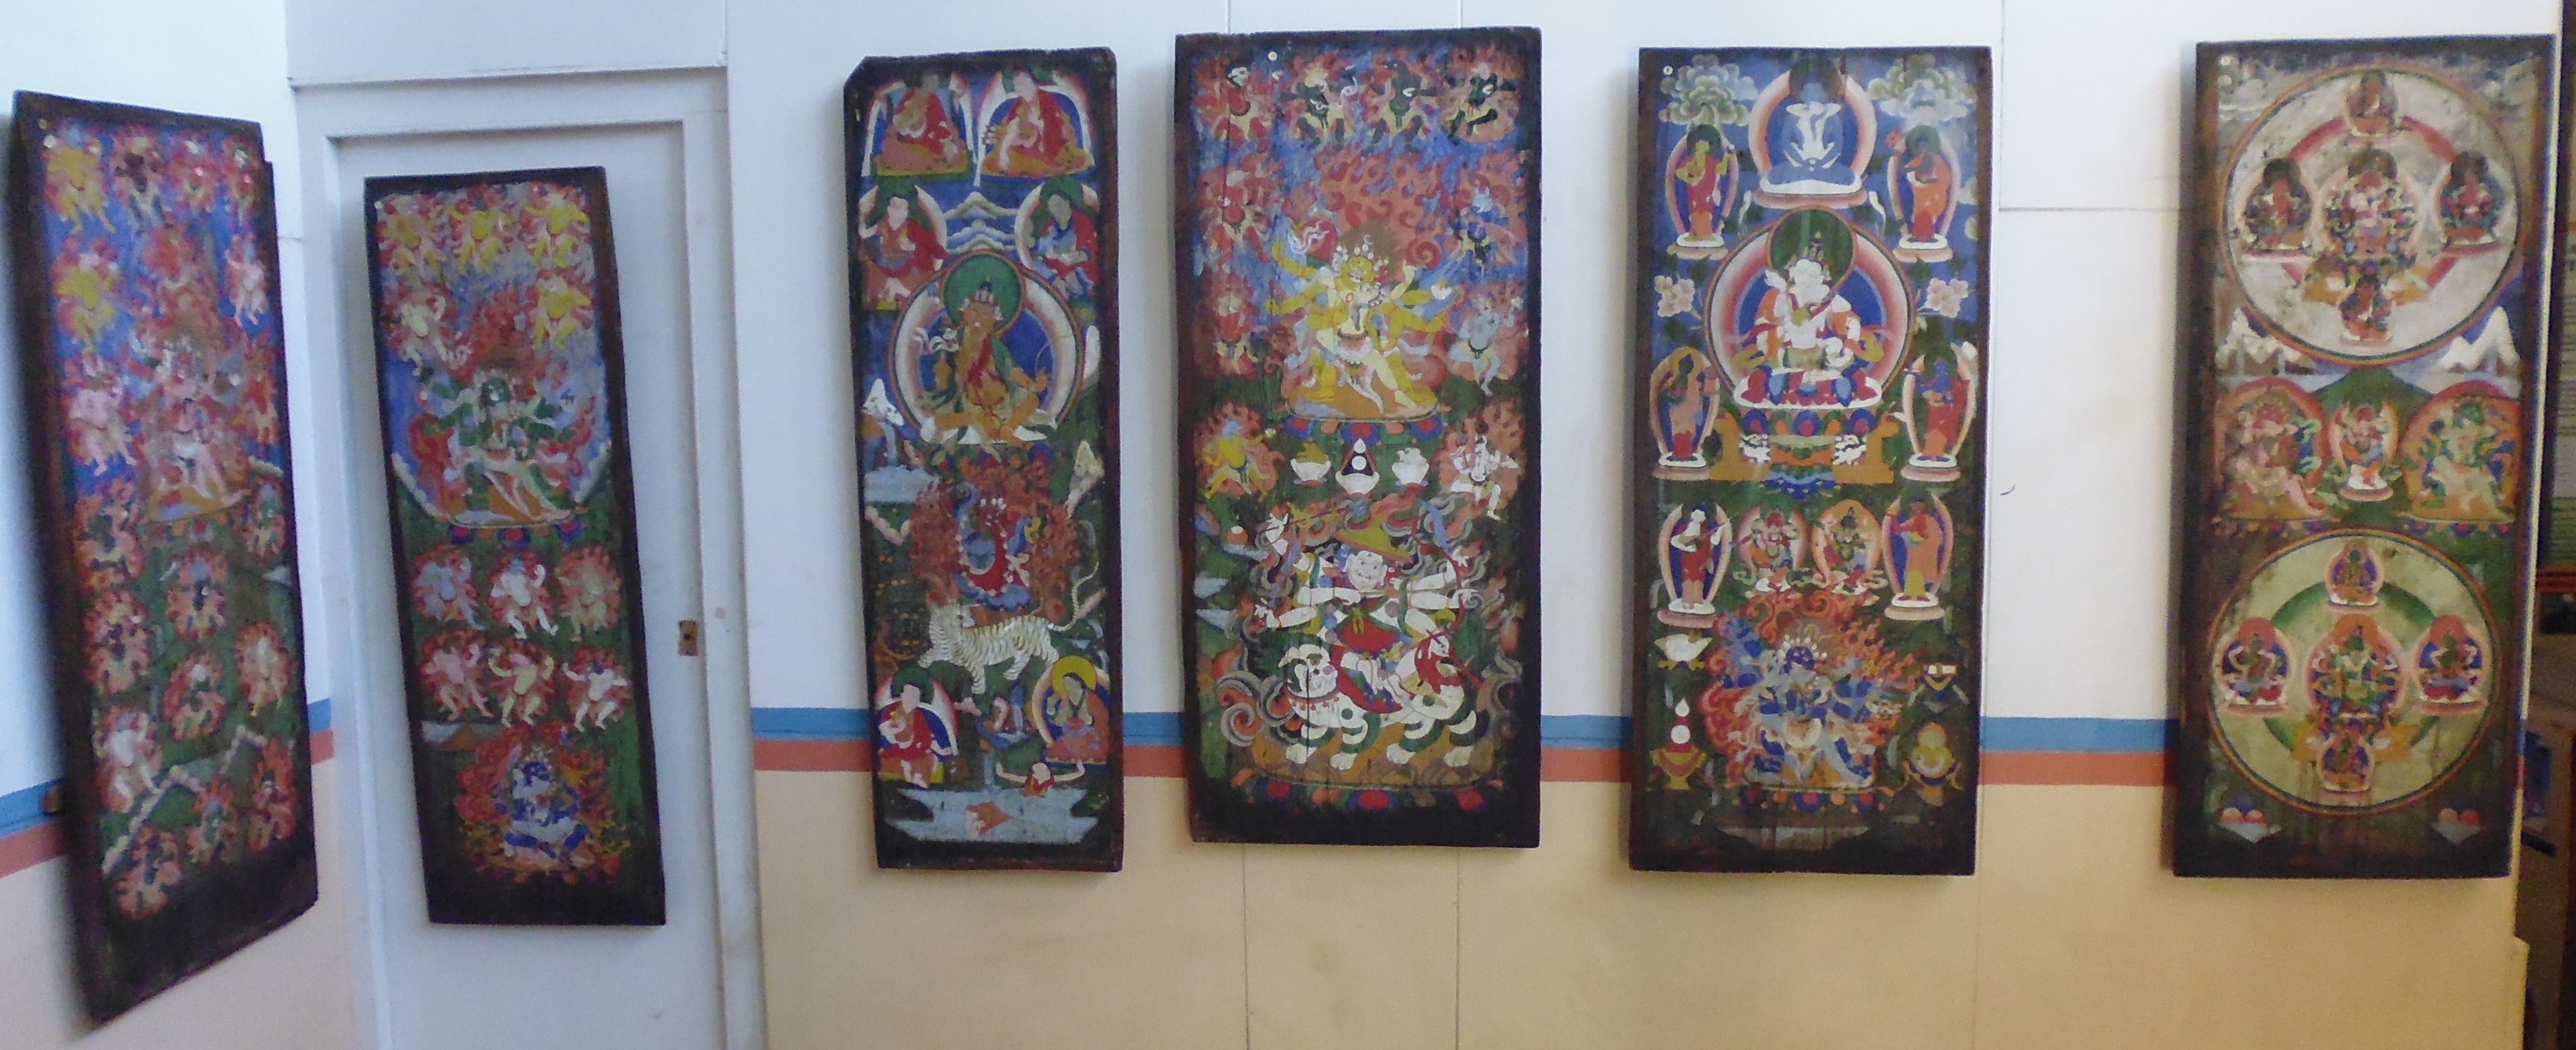 Sherpa Cultural Museum - Artwork